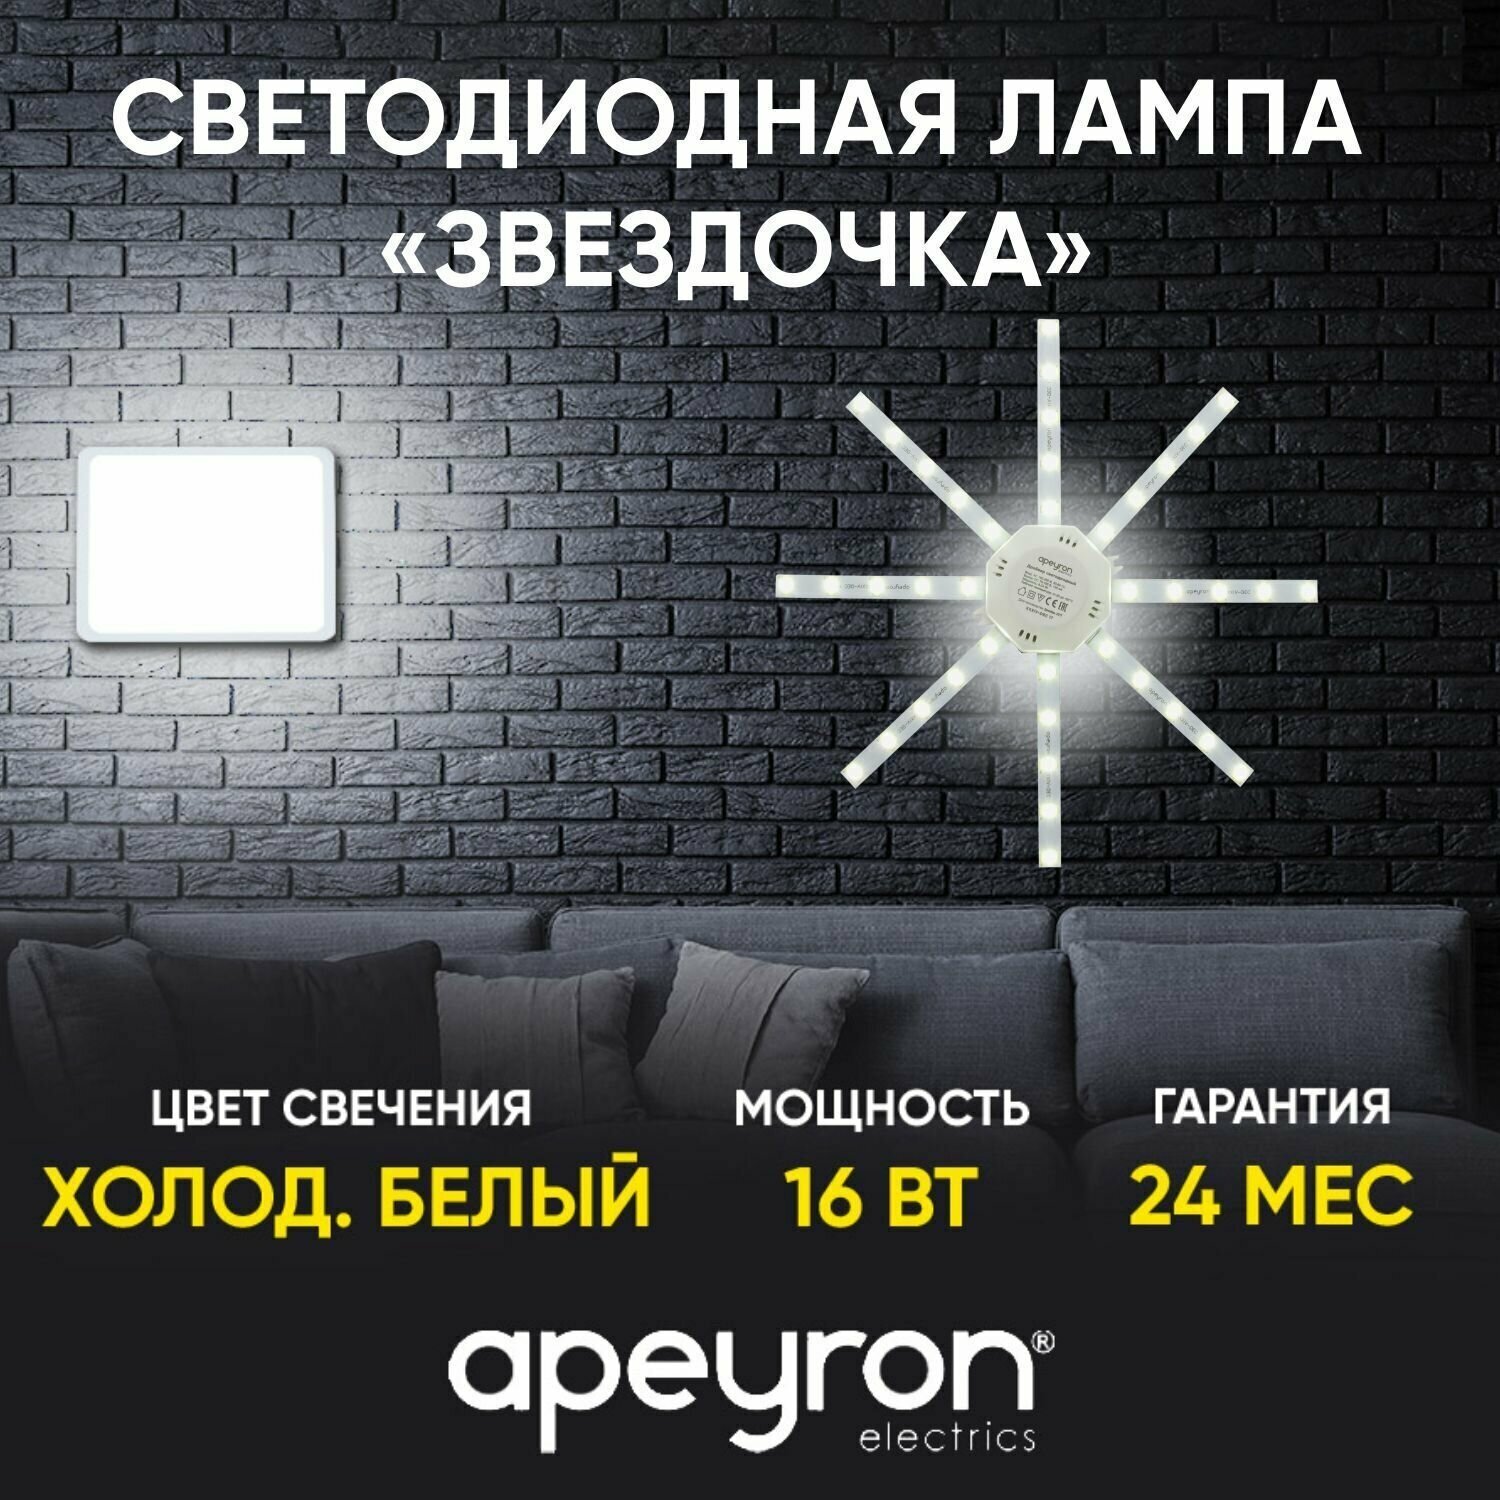 Светодиодная лампа Apeyron 12-06 Звездочка 220В 16Вт 1200Лм 6400К